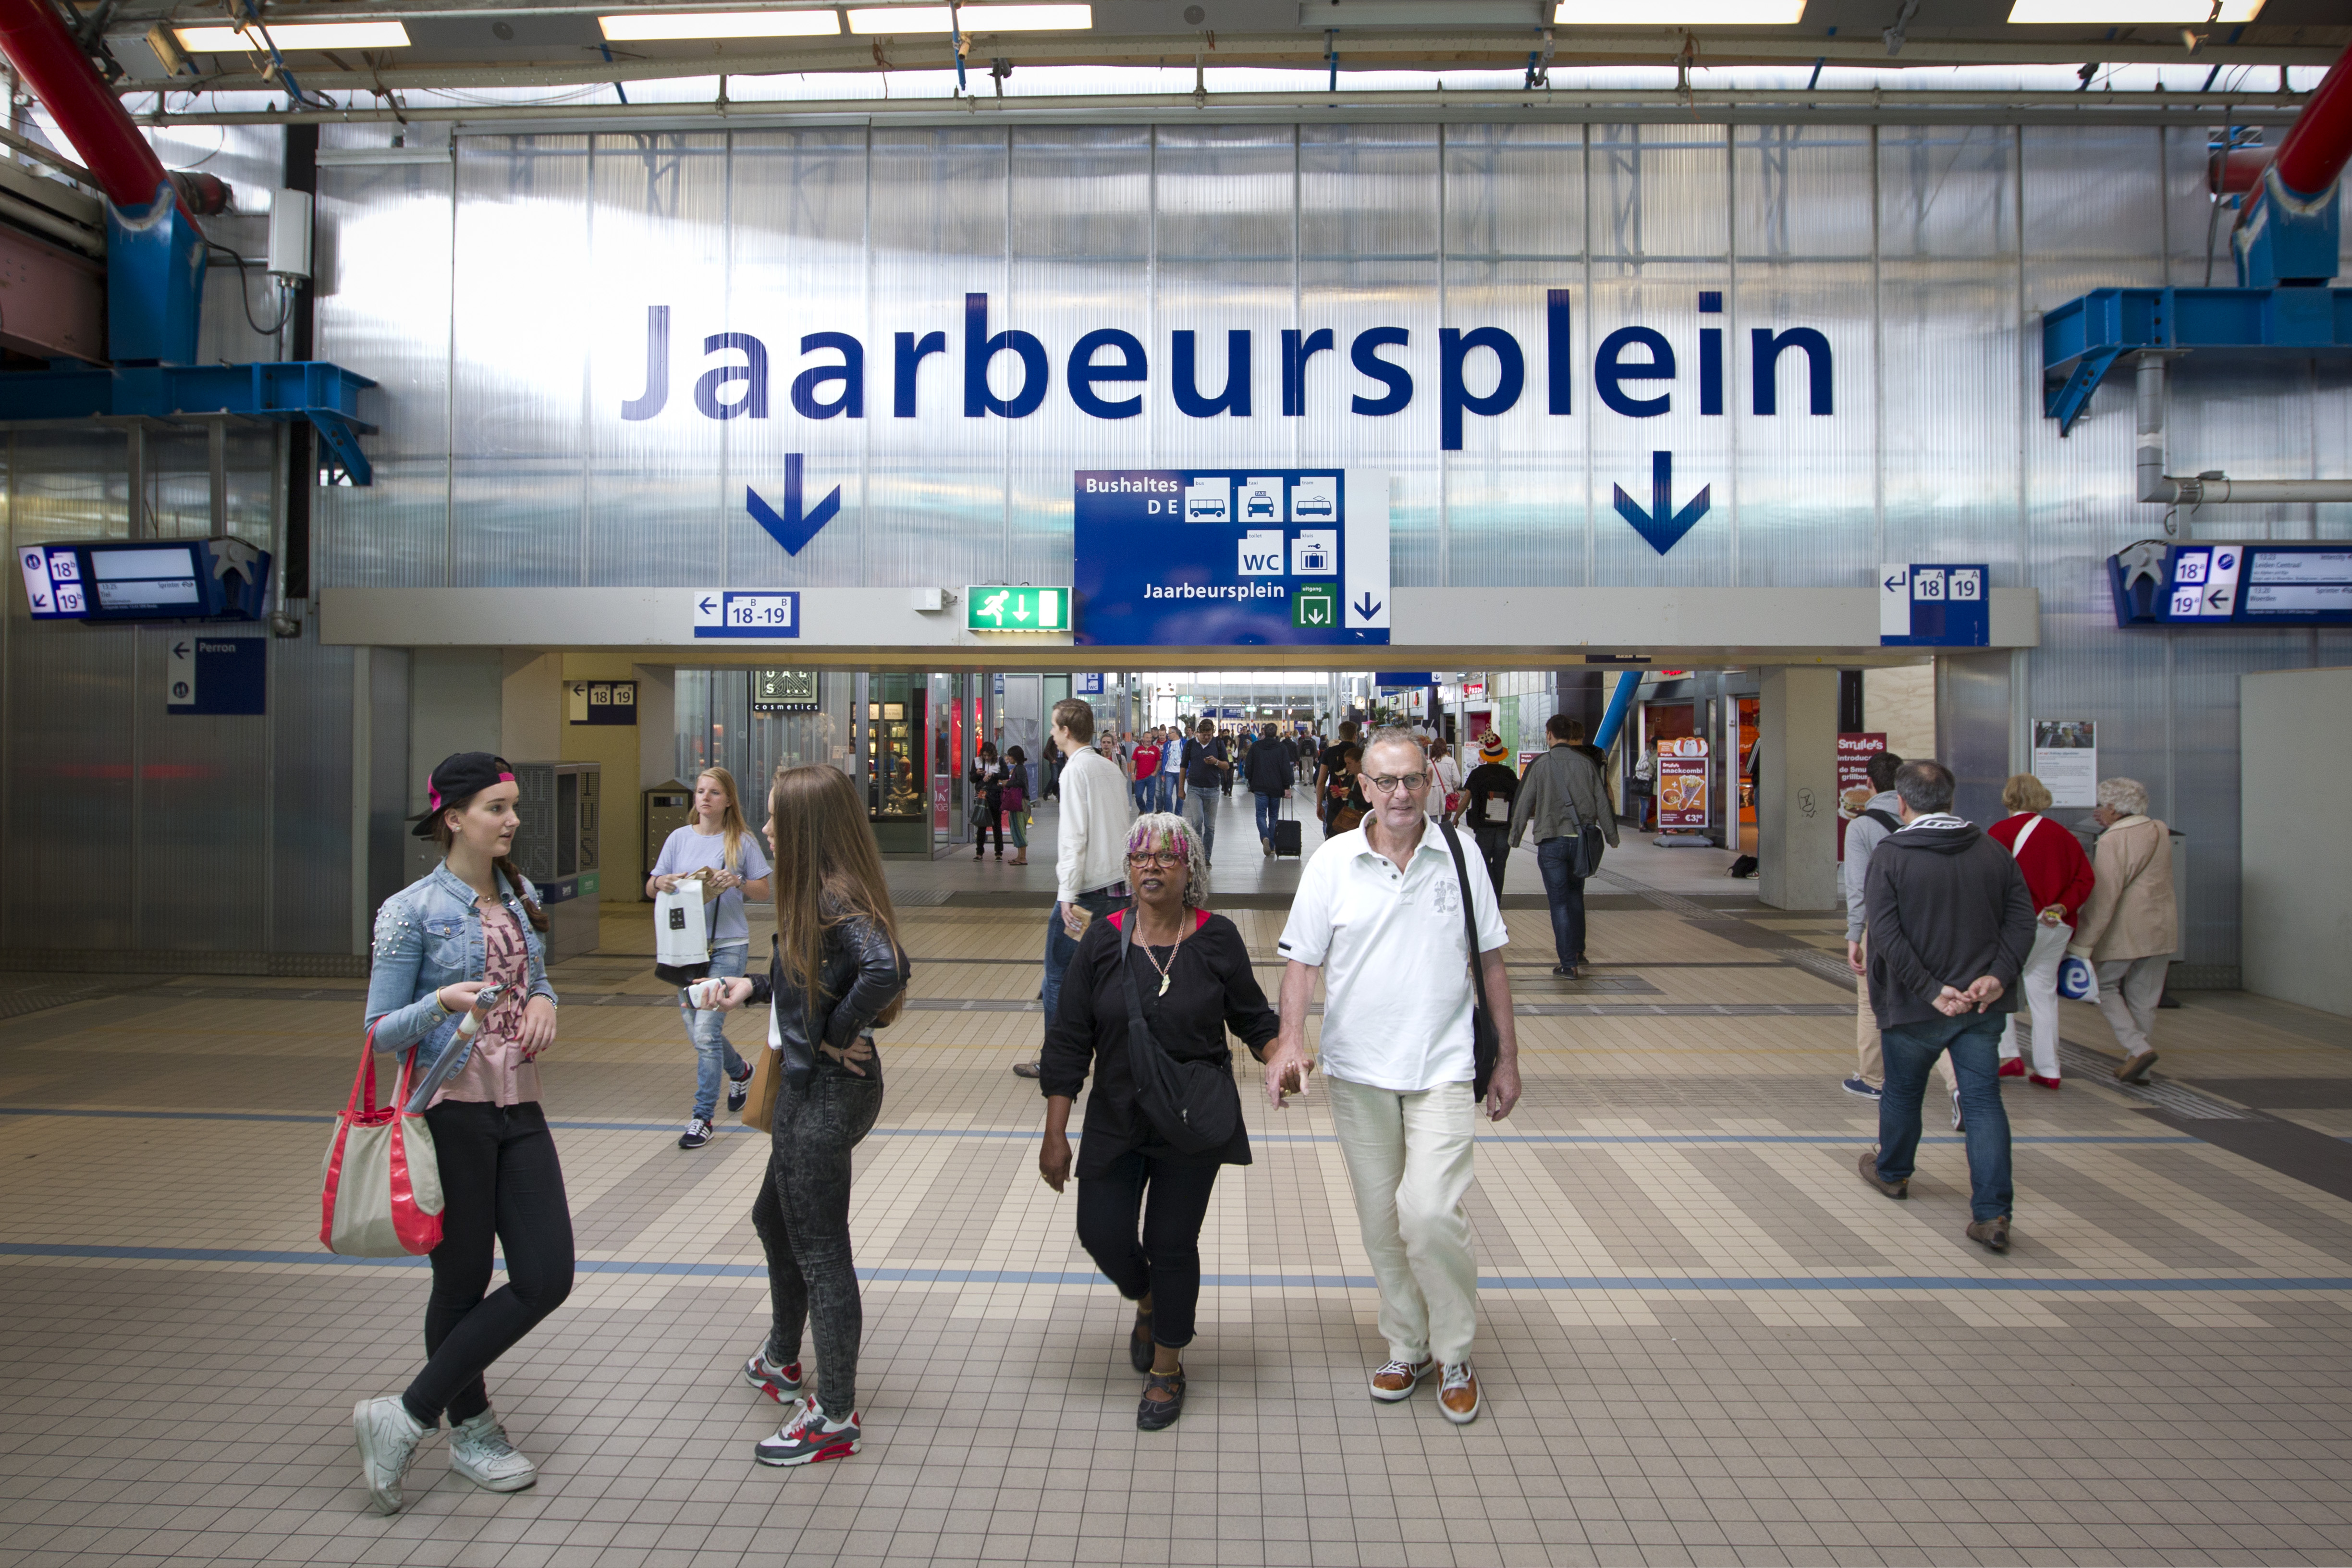 2014-07-01 13:32:45 UTRECHT - Reizigers op Utrecht Centraal. Het station ondergaat een grondige verbouwing. ANP JEROEN JUMELET